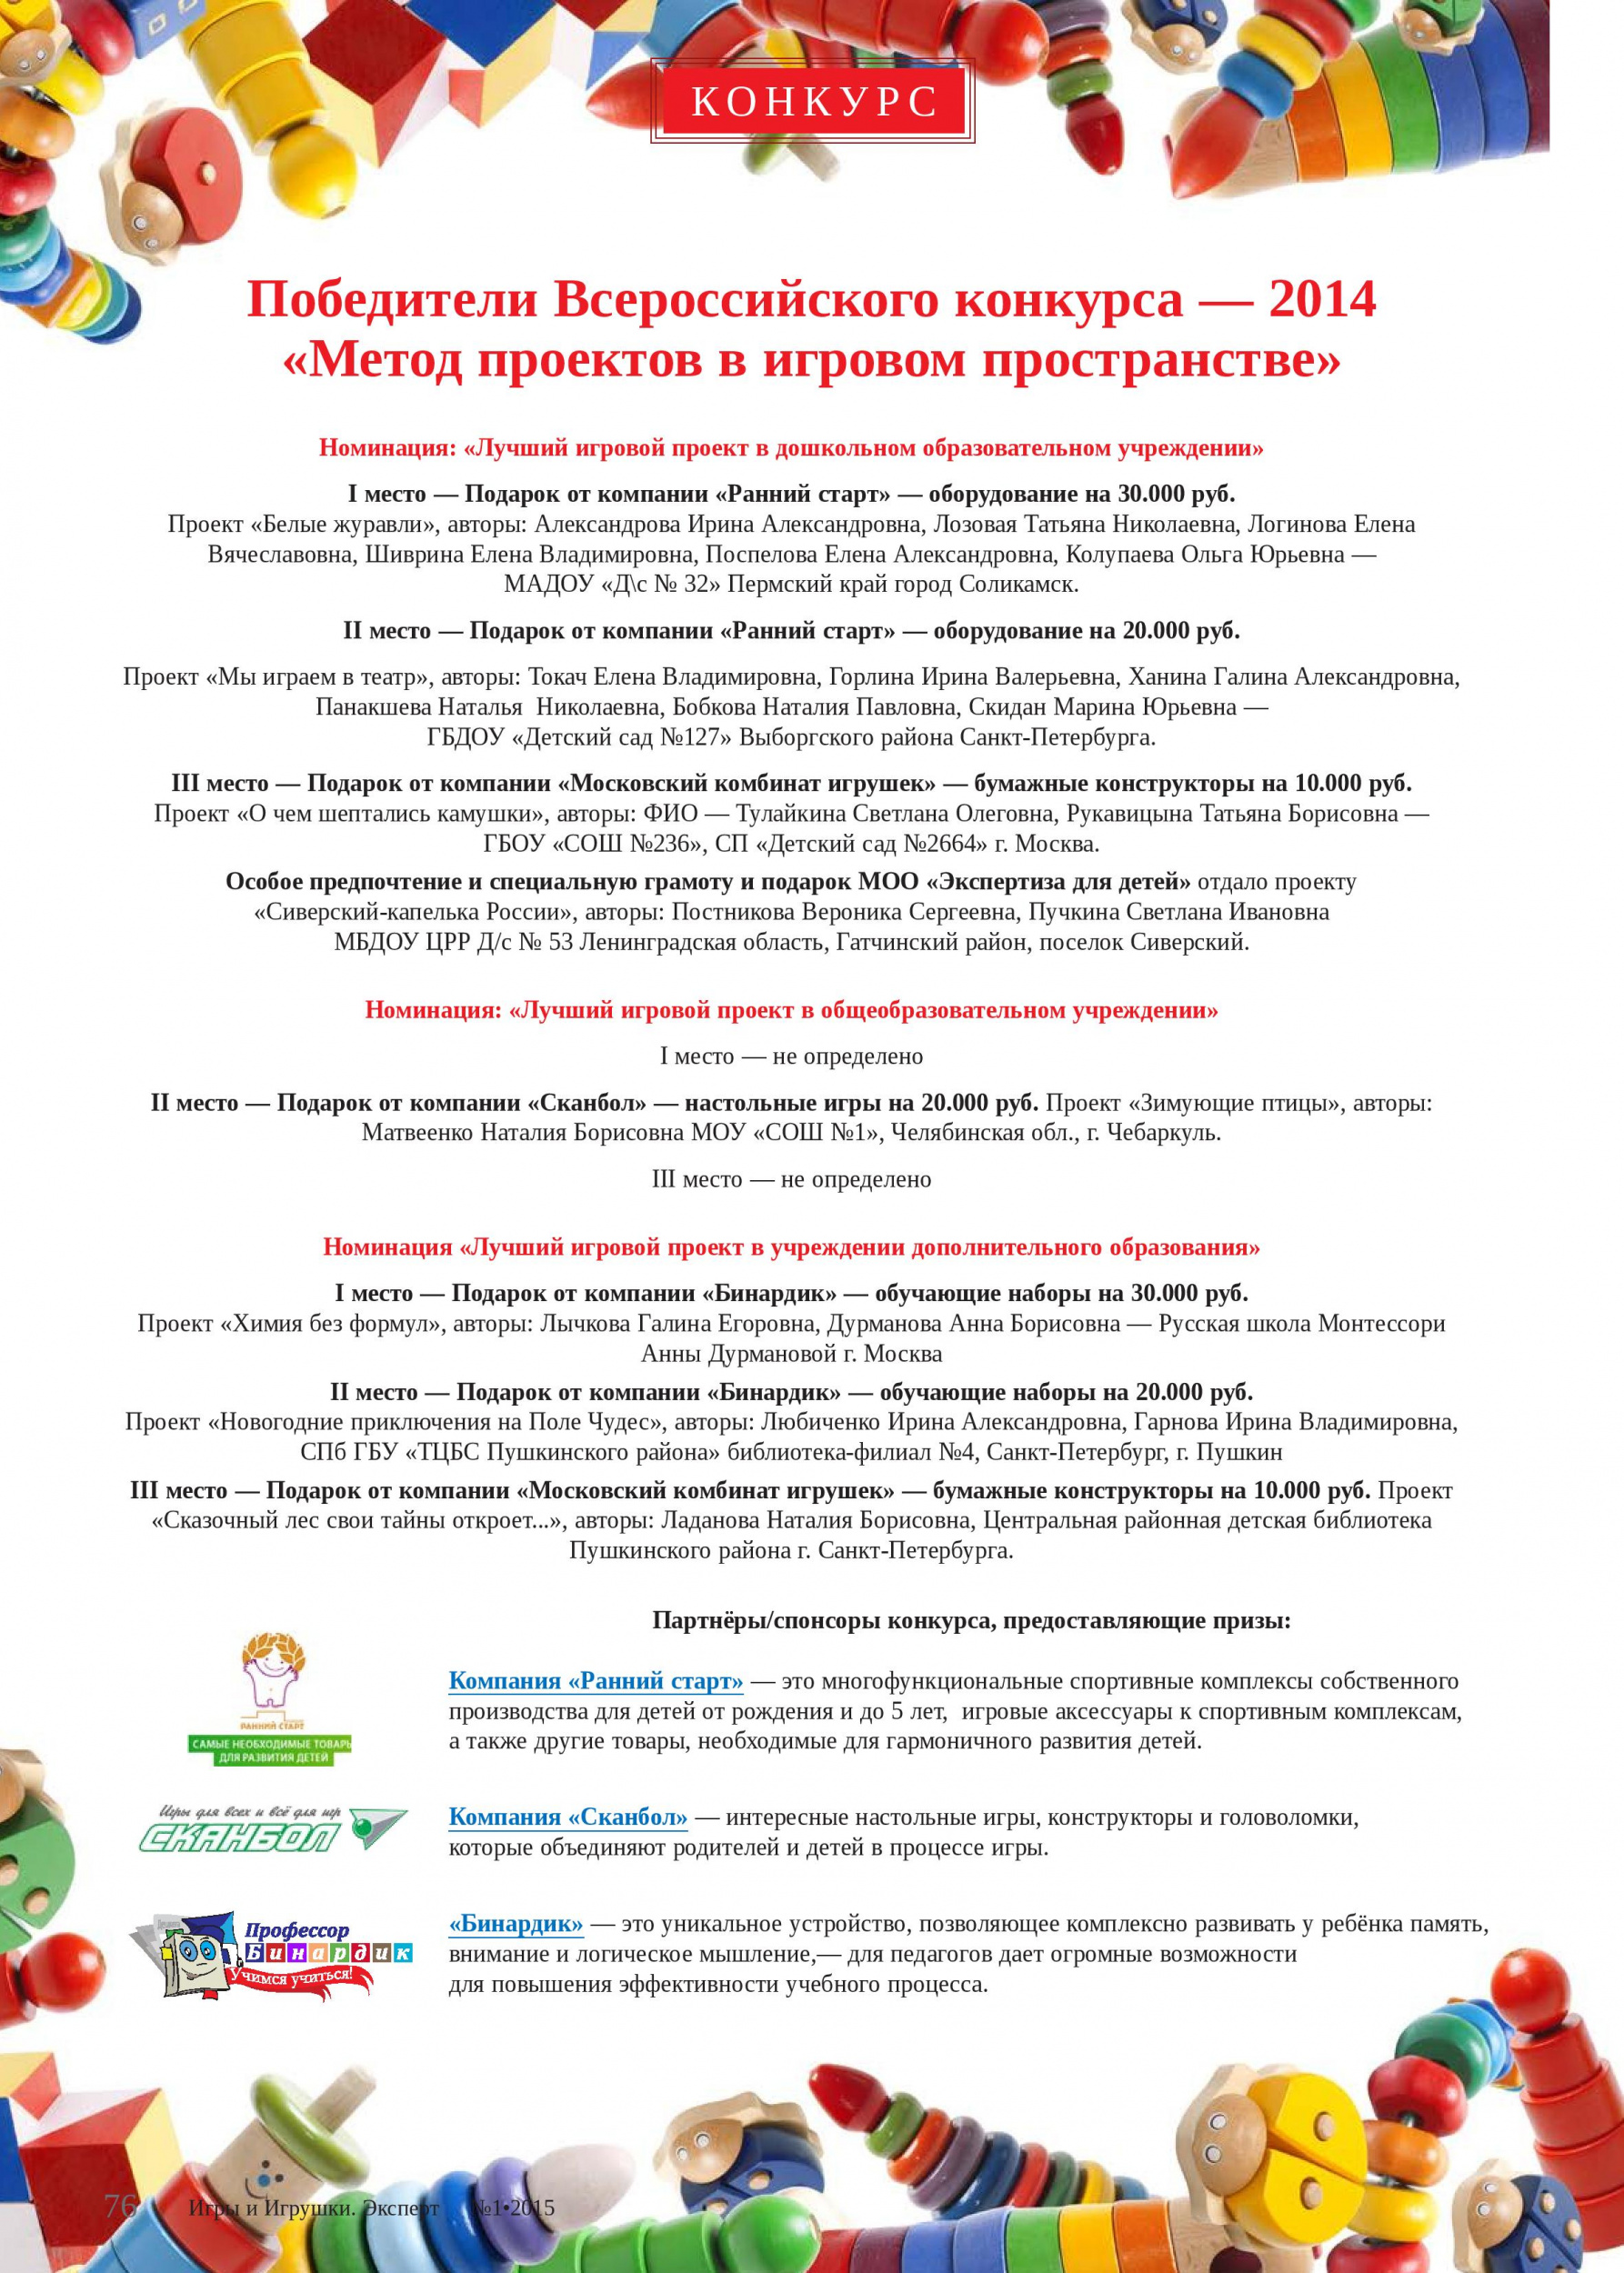 Победители Всероссийского конкурса — 2014 «Метод проектов в игровом пространстве»